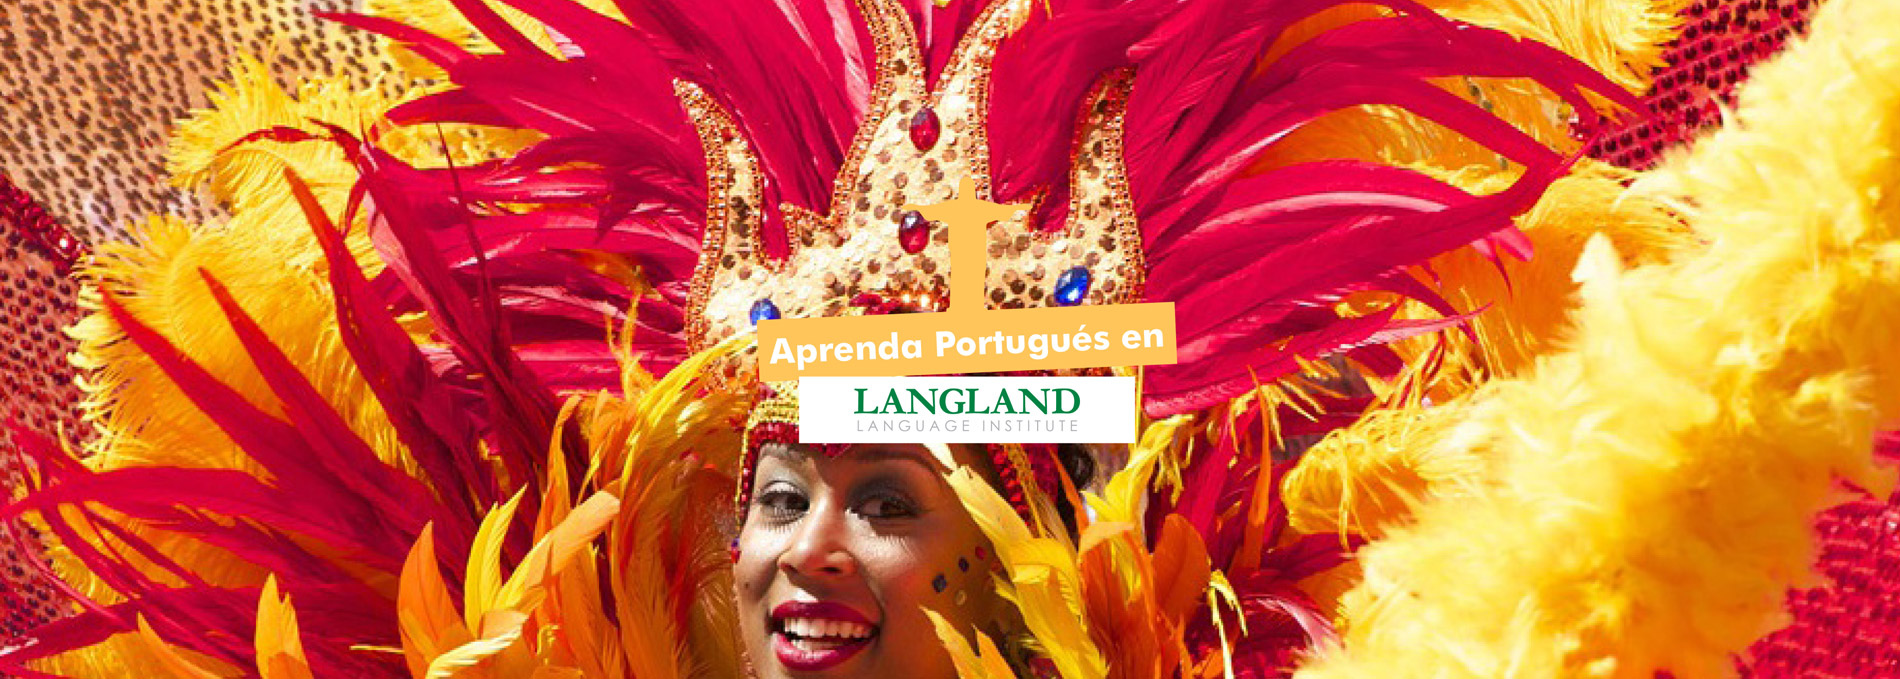 Apenda-Portugues-en-Langland_Page_1